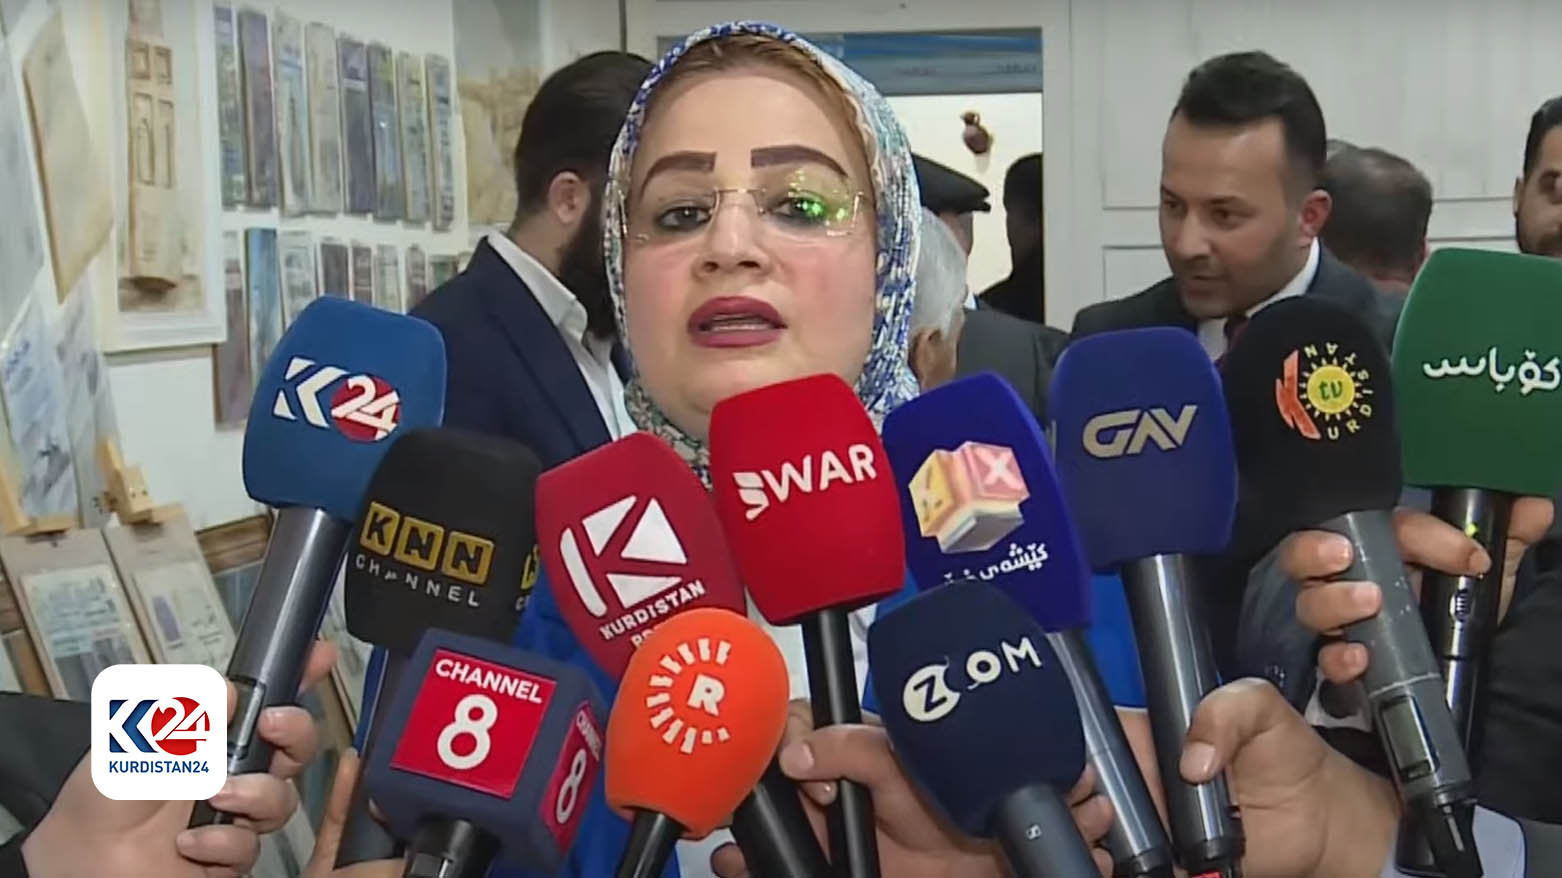 Türkmen Reform Partisi Başkan Yardımcısı Muna Kahveci